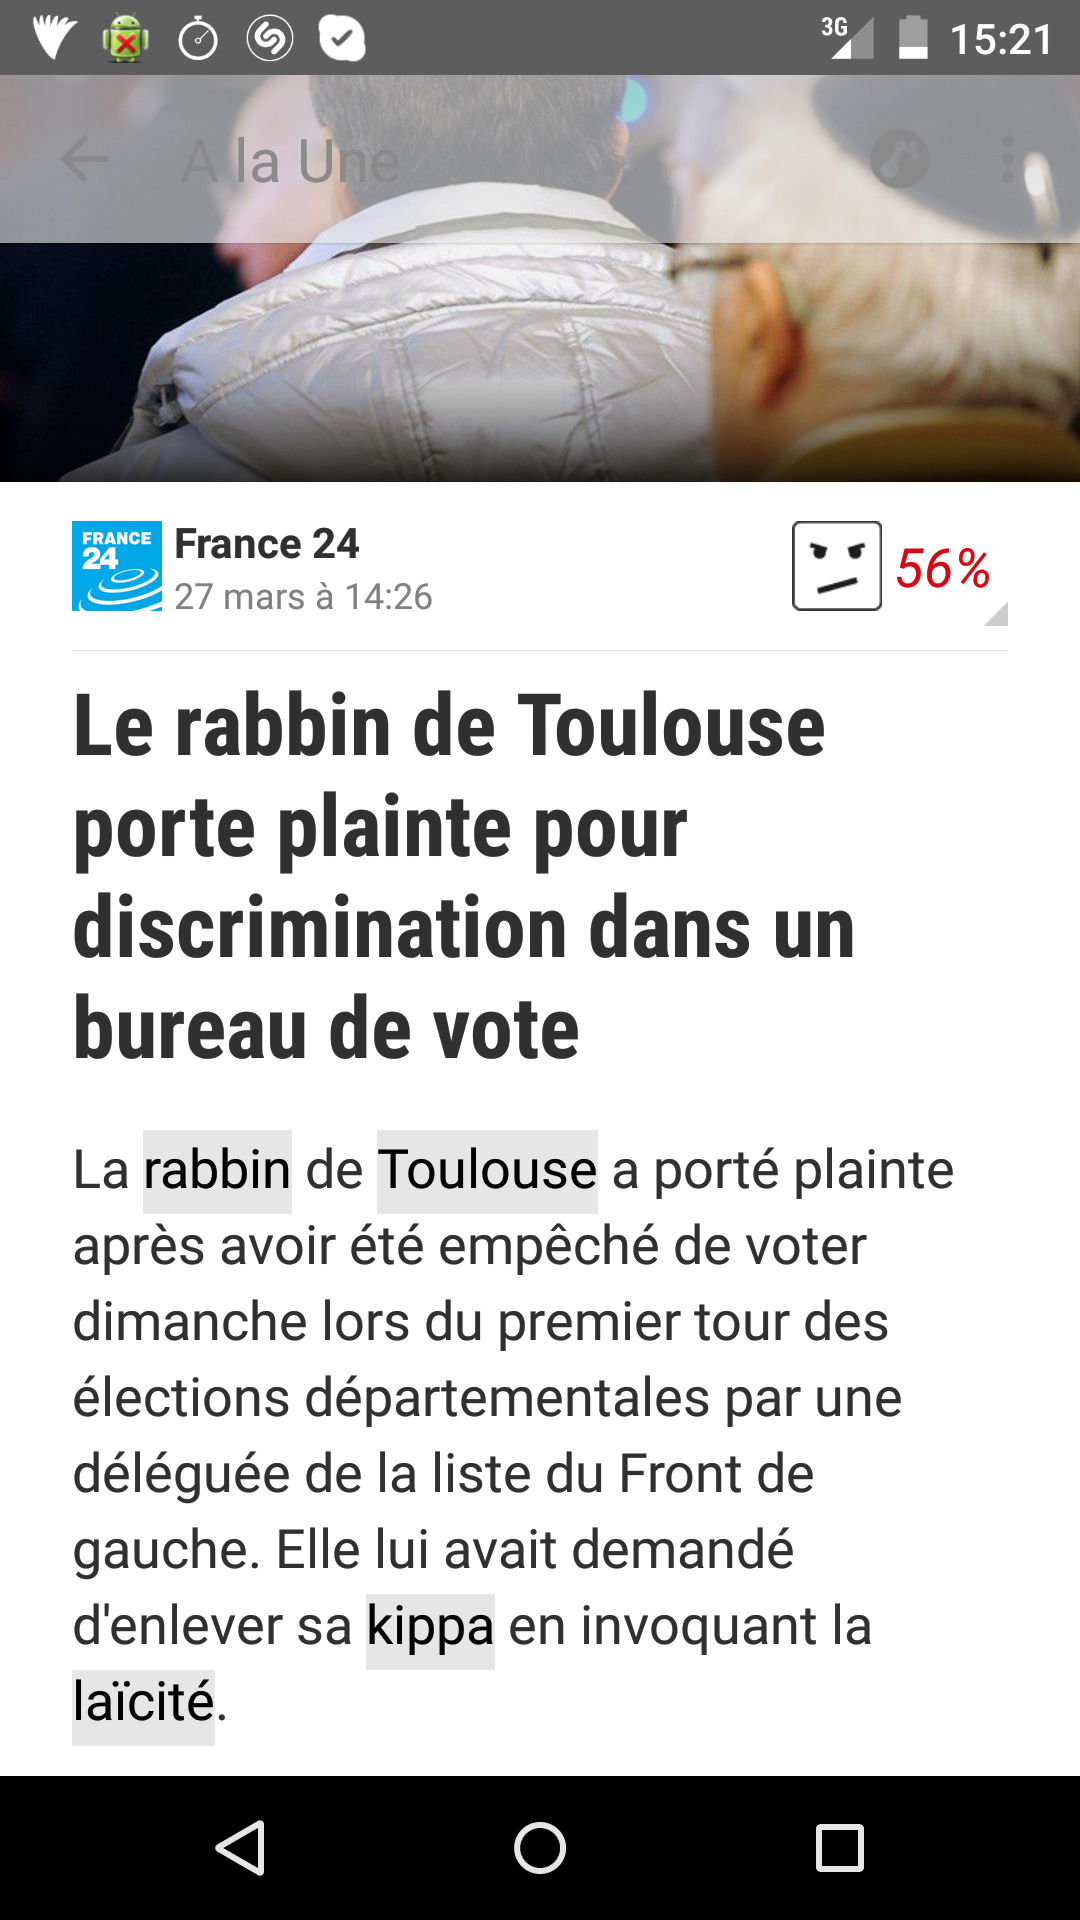 Le rabin de Toulouse porte plainte pour discrimination 